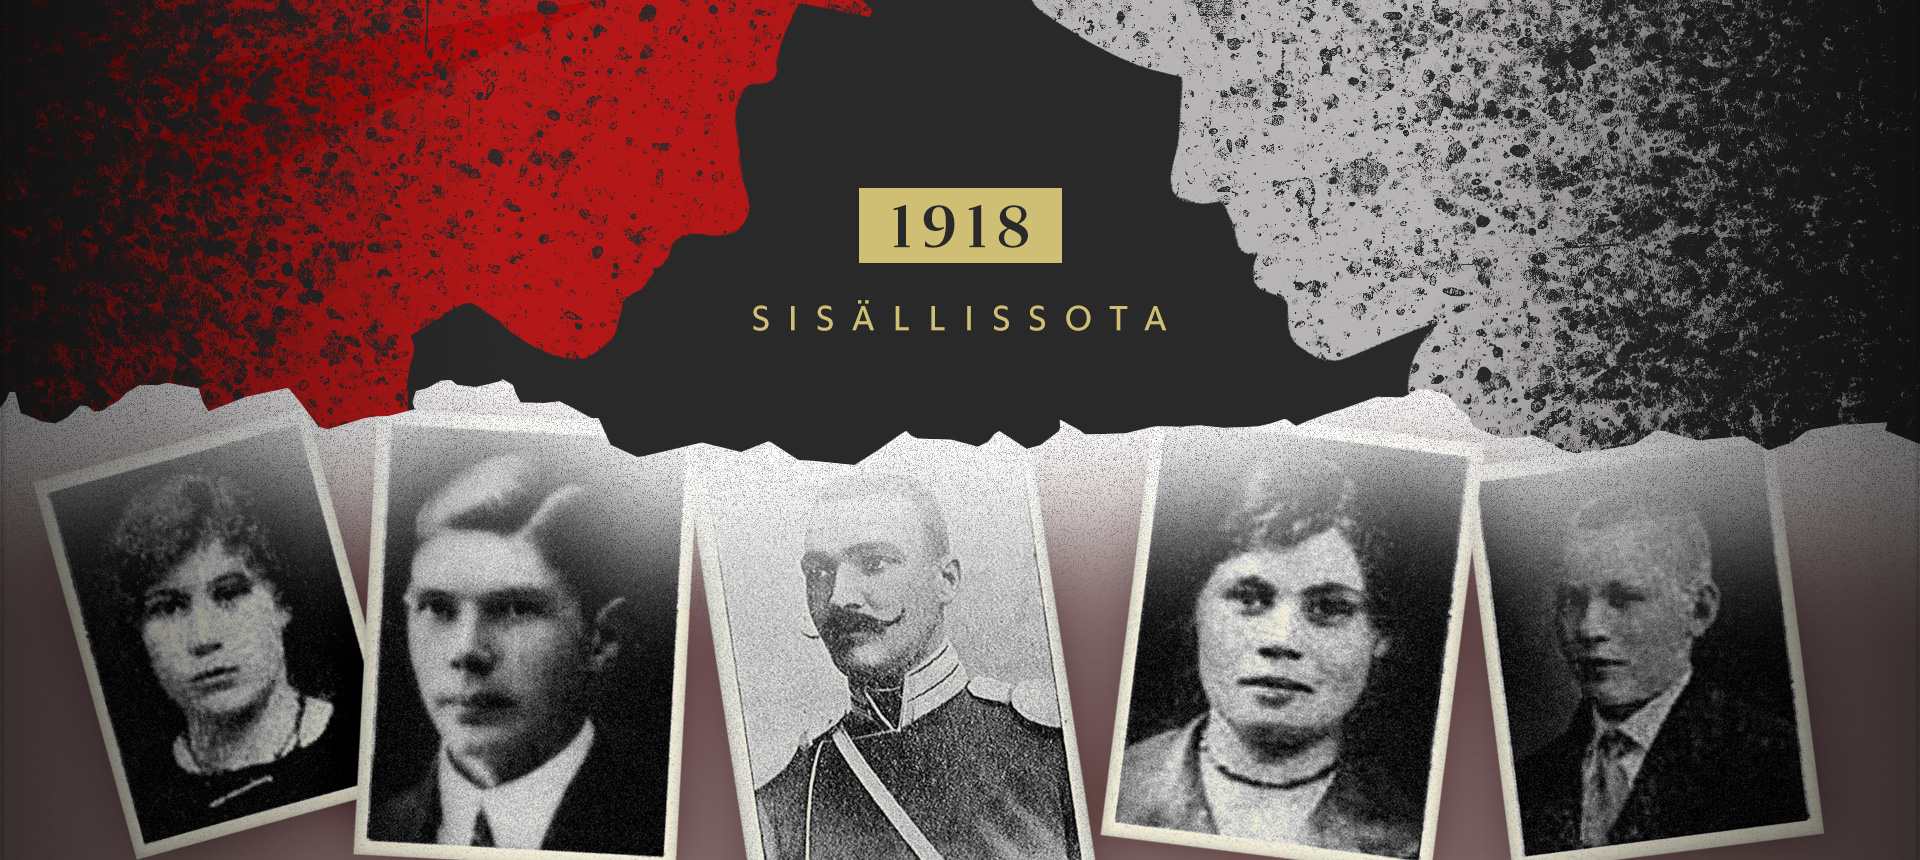 Kun Suomi silpoi itsensä – HS:n erikoisartikkeli kertoo, kuinka vuoden 1918  silmitön verenvuodatus leimahti ja keitä olivat sen uhrit